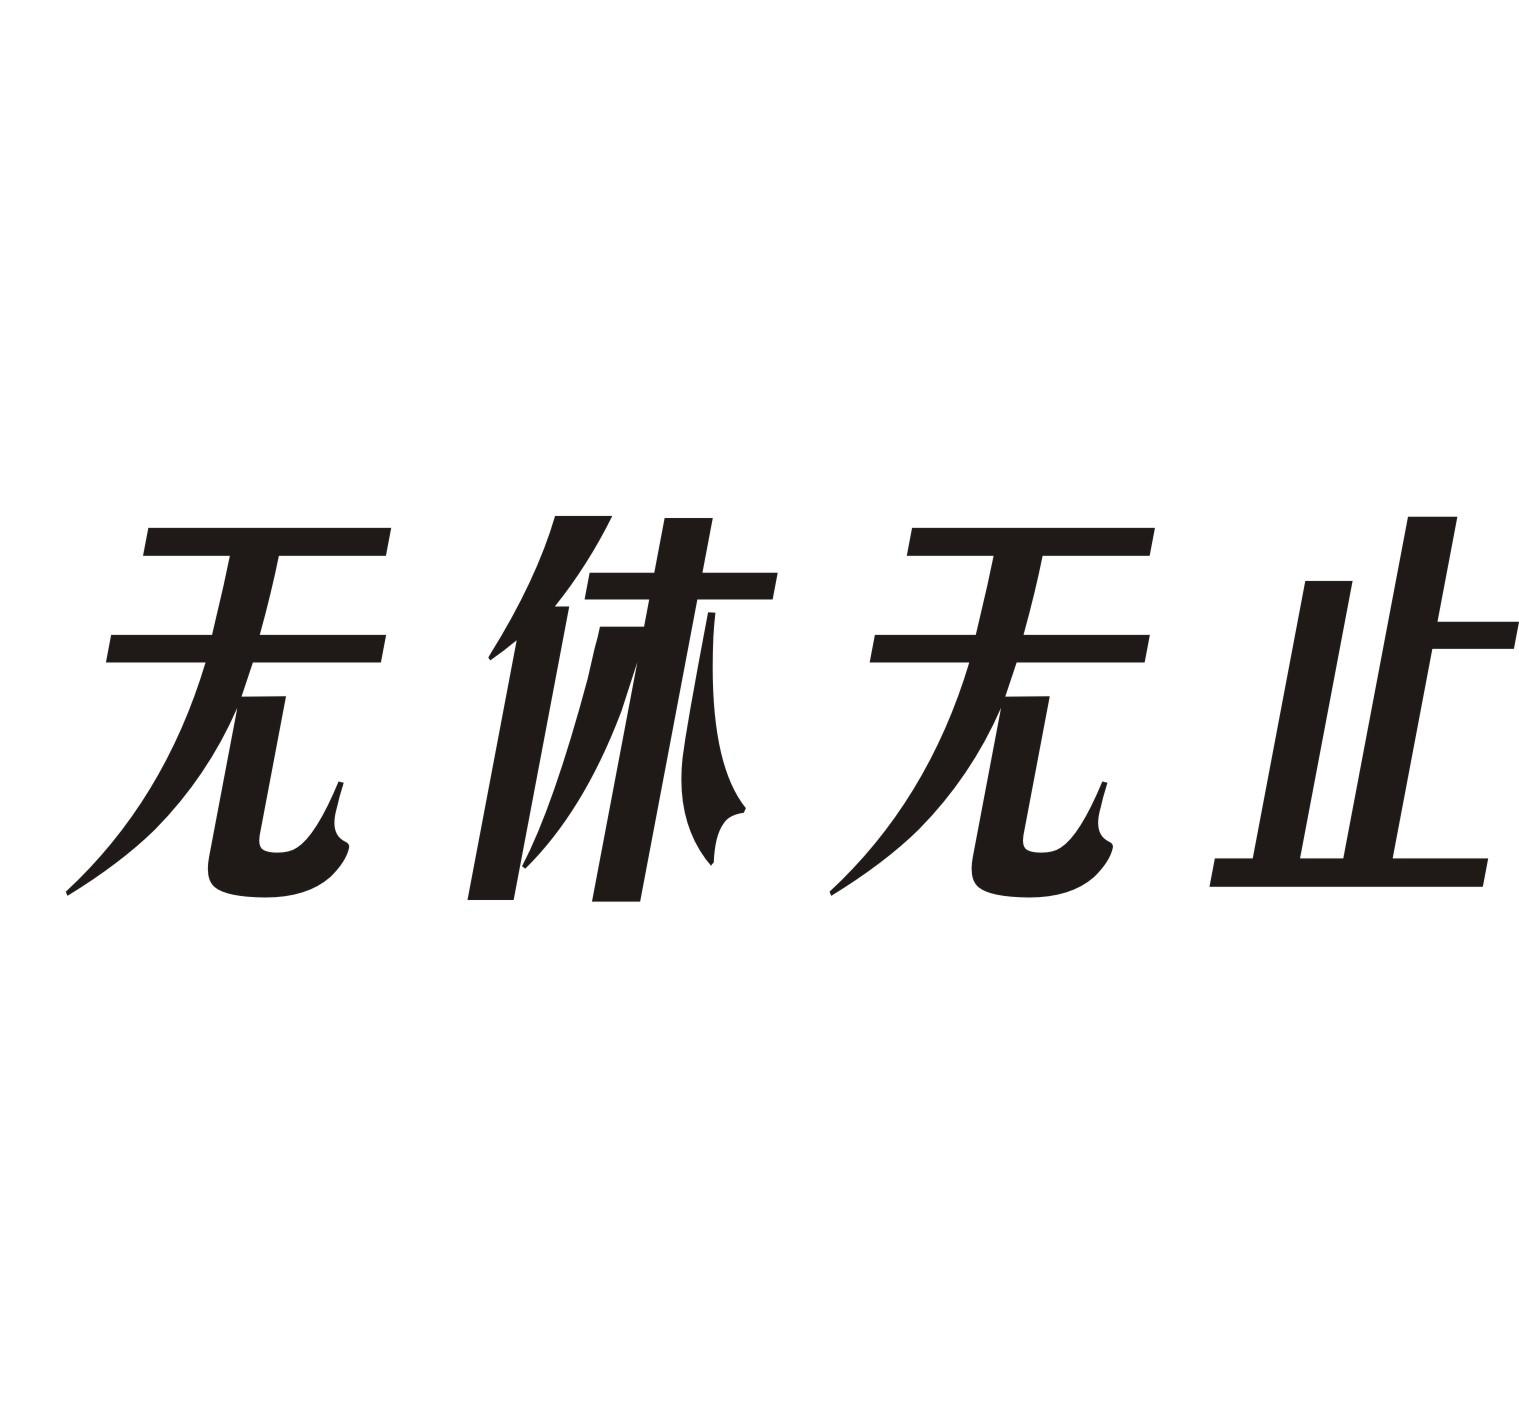 商标文字无休无止商标注册号 18959171,商标申请人北京世纪超富轮商贸